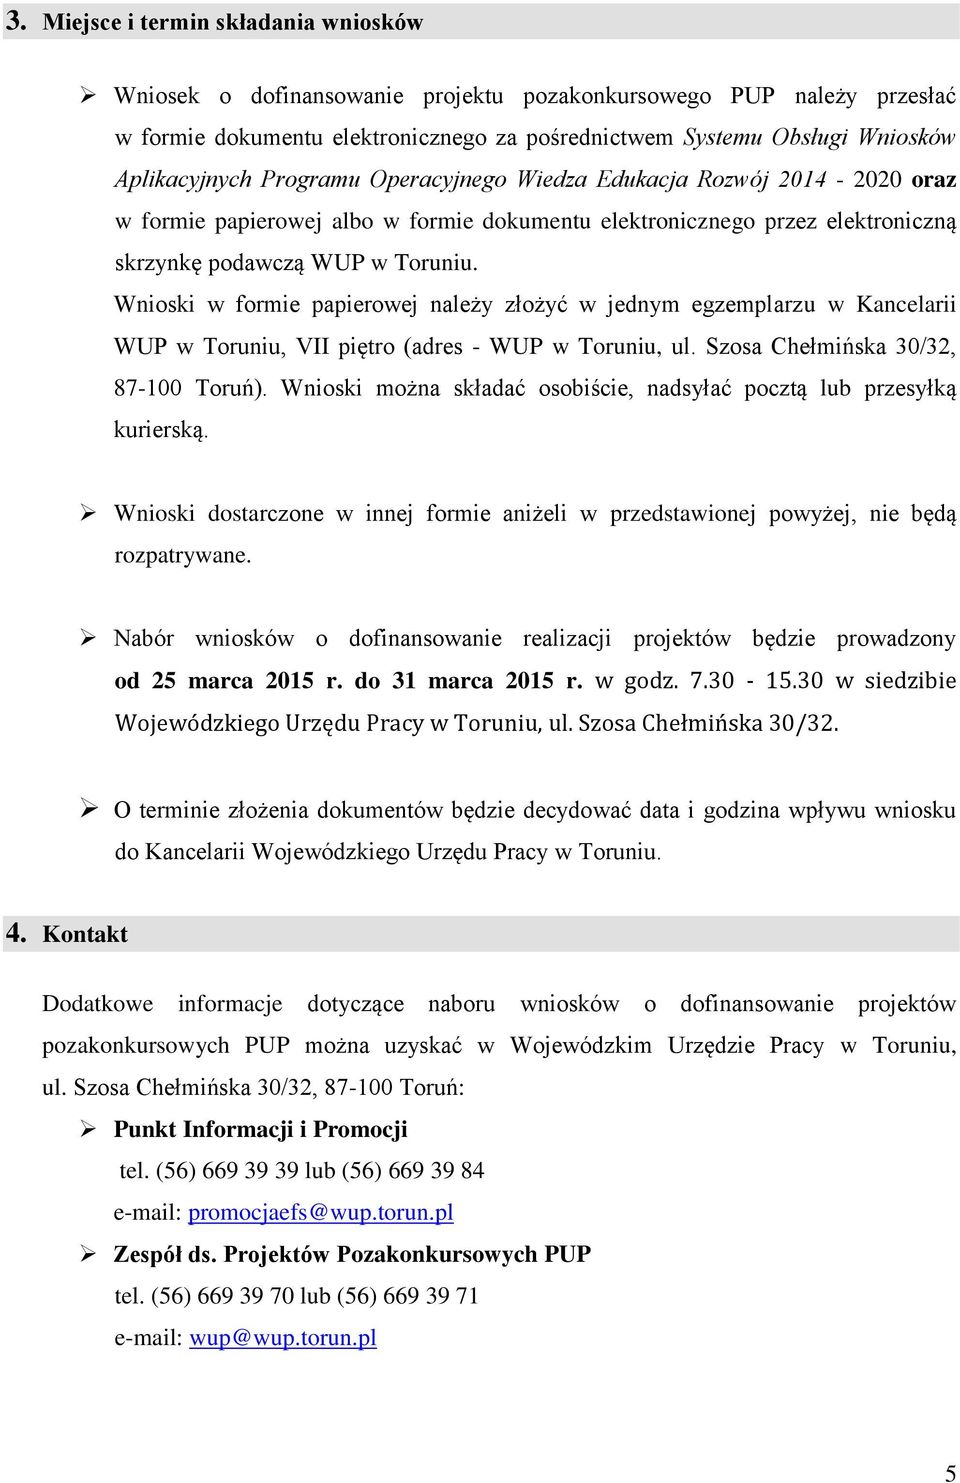 Wnioski w formie papierowej należy złożyć w jednym egzemplarzu w Kancelarii WUP w Toruniu, VII piętro (adres - WUP w Toruniu, ul. Szosa Chełmińska 30/32, 87-100 Toruń).